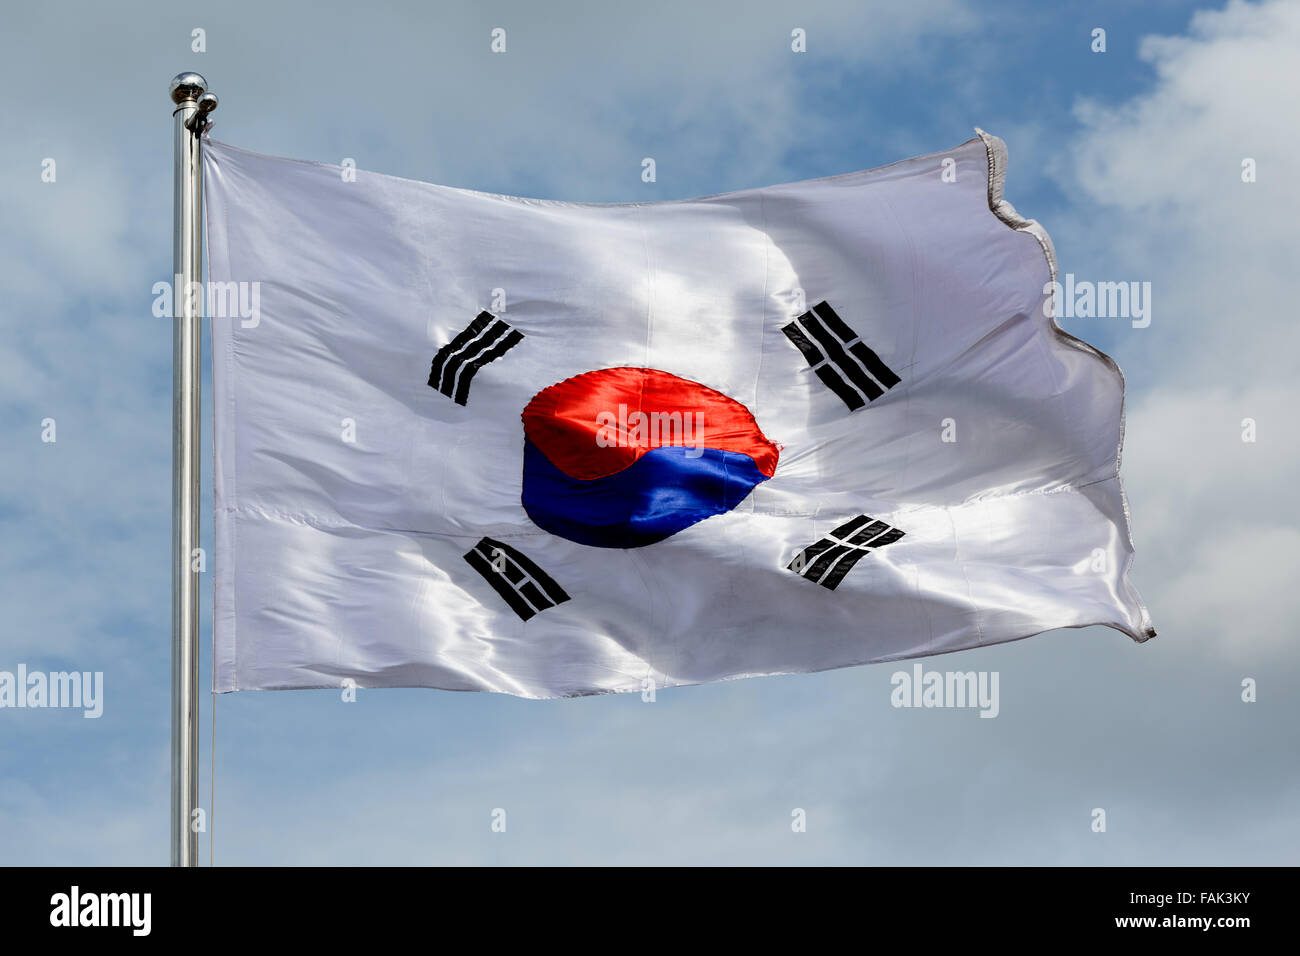 Corea del Sur bandera ondeando al viento, Corea Foto de stock